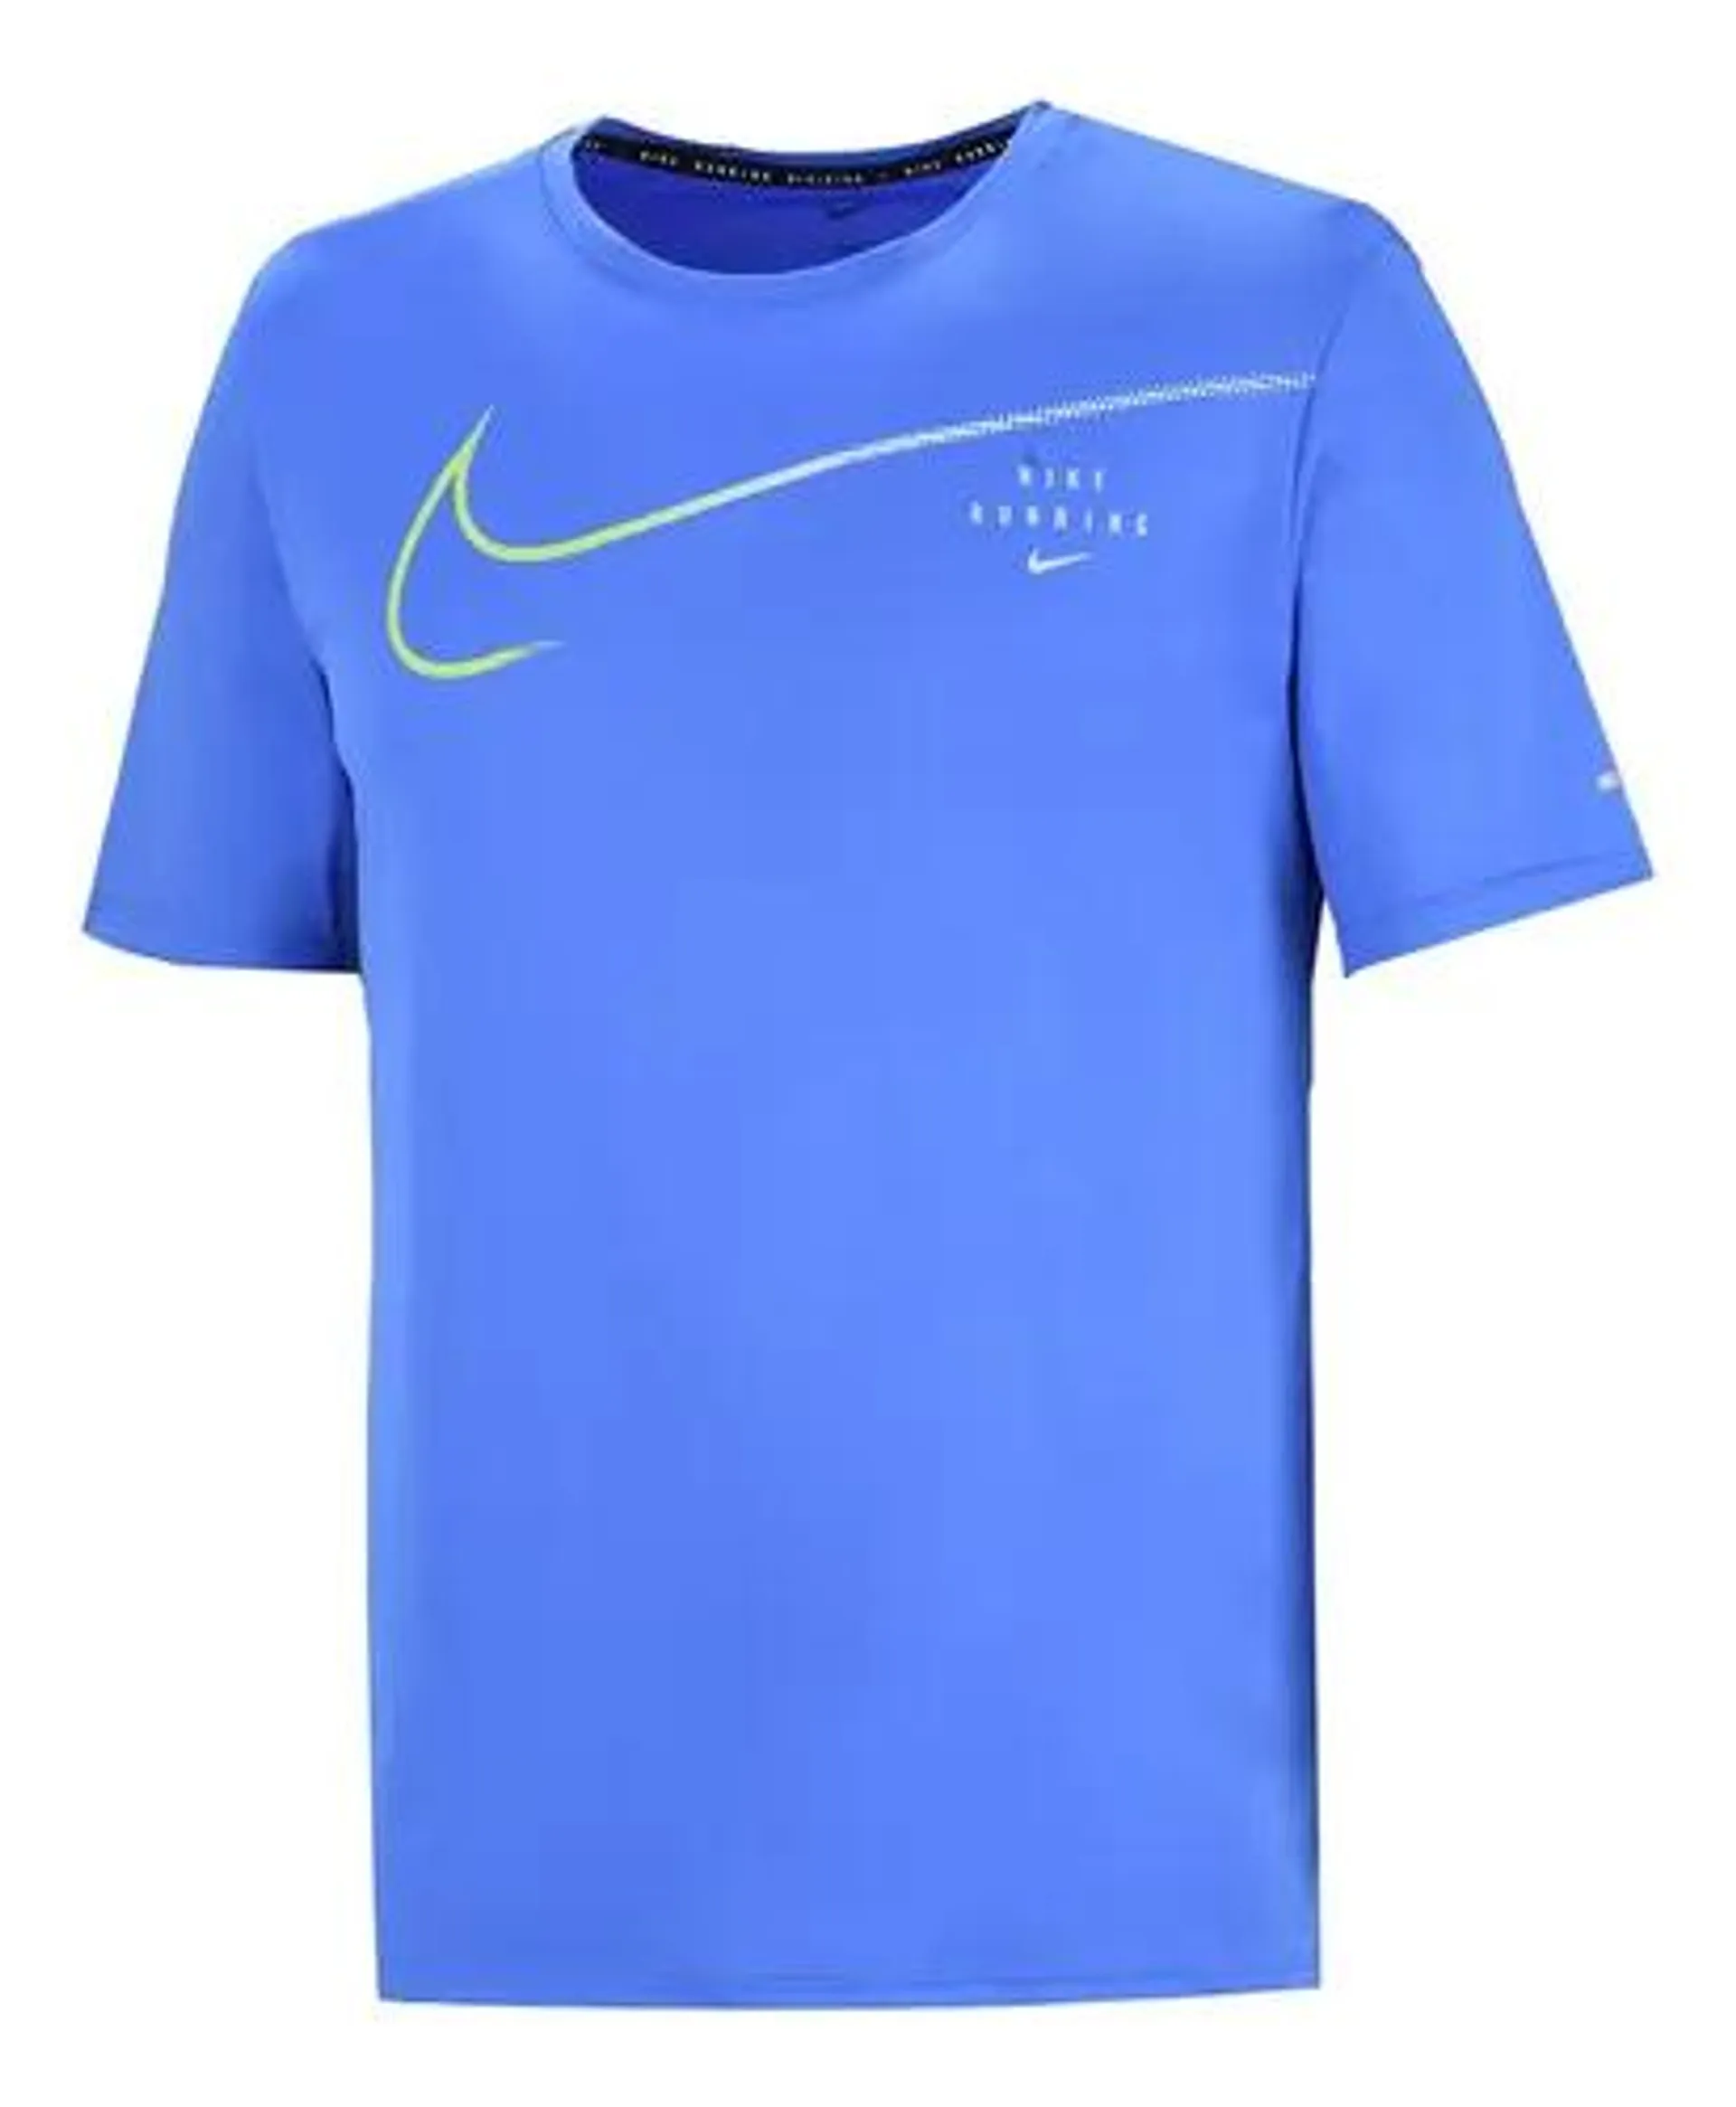 Remera Nike Dri-fit Uv Run Division Miler En Azul